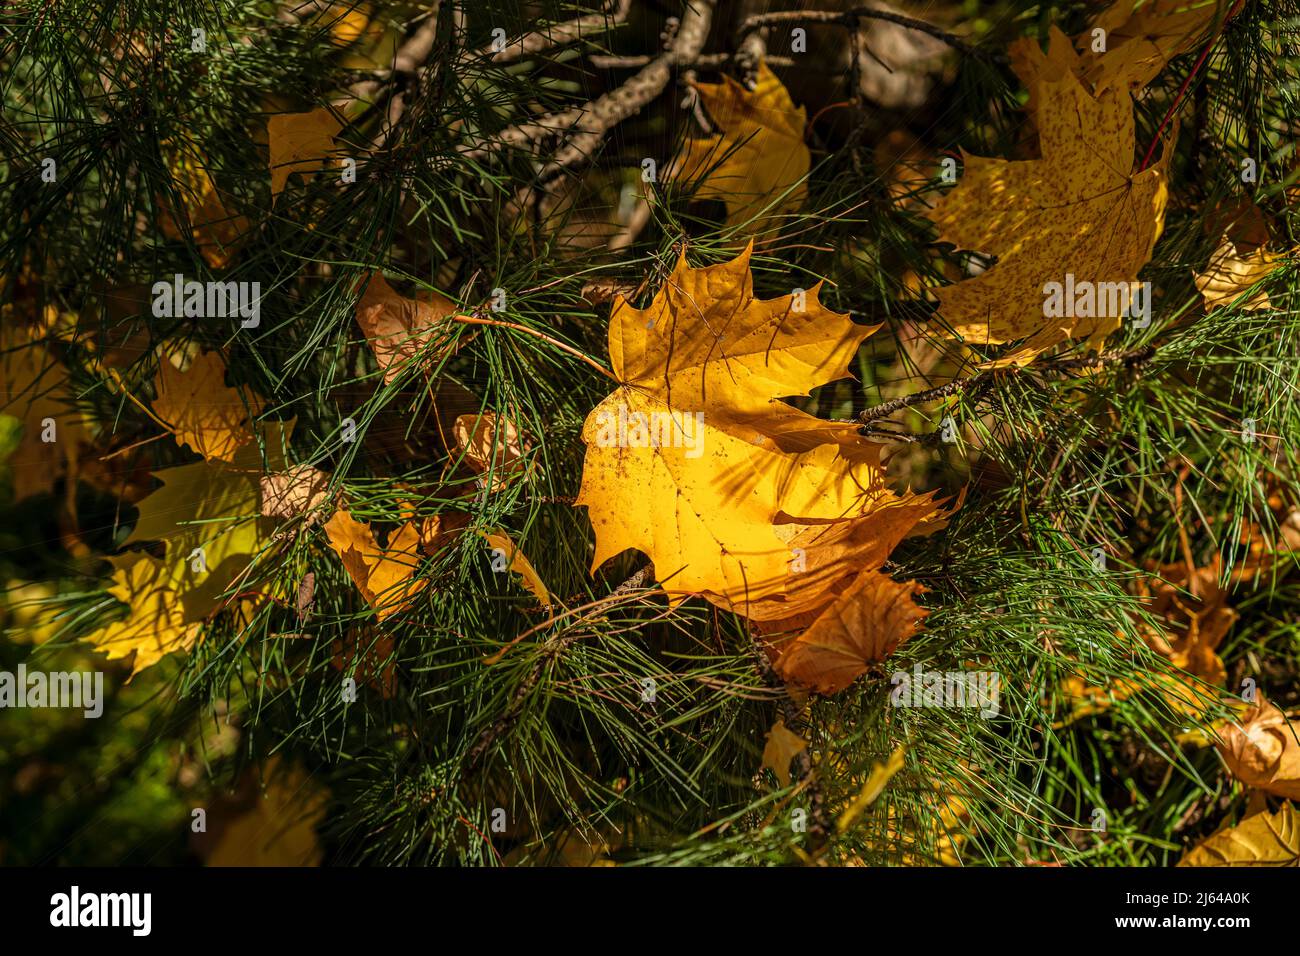 Nahaufnahme von gefallenen bunten Herbstblättern aus Ahorn im grünen Gras an sonnigen Tagen Stockfoto